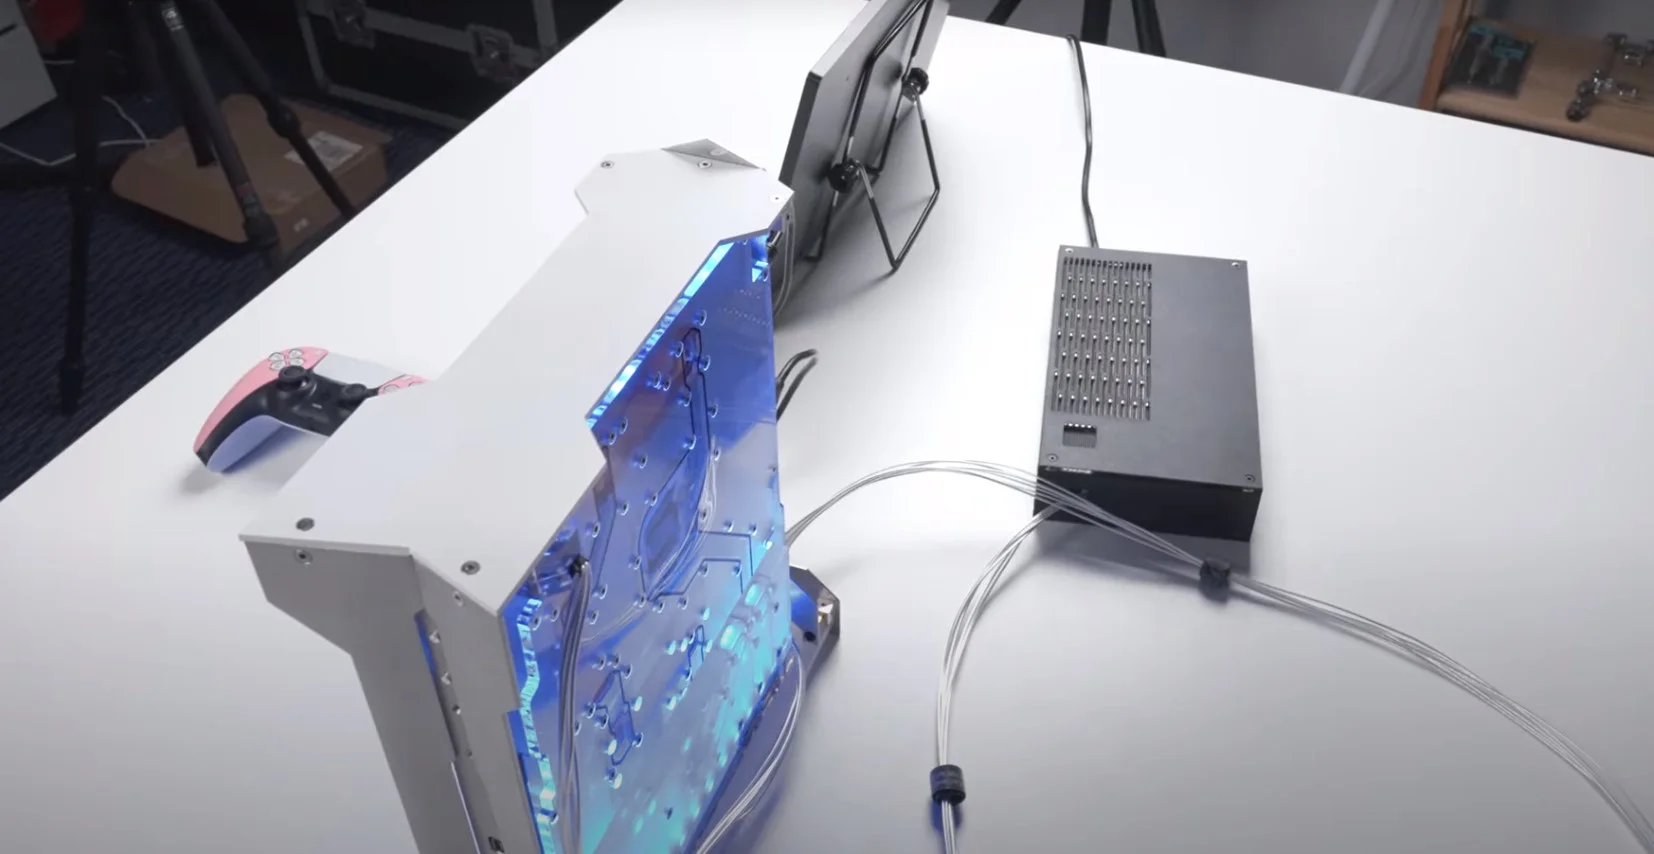 Фанат сделал кастомный корпус для PlayStation 5 с водяным охлаждением - фото 1